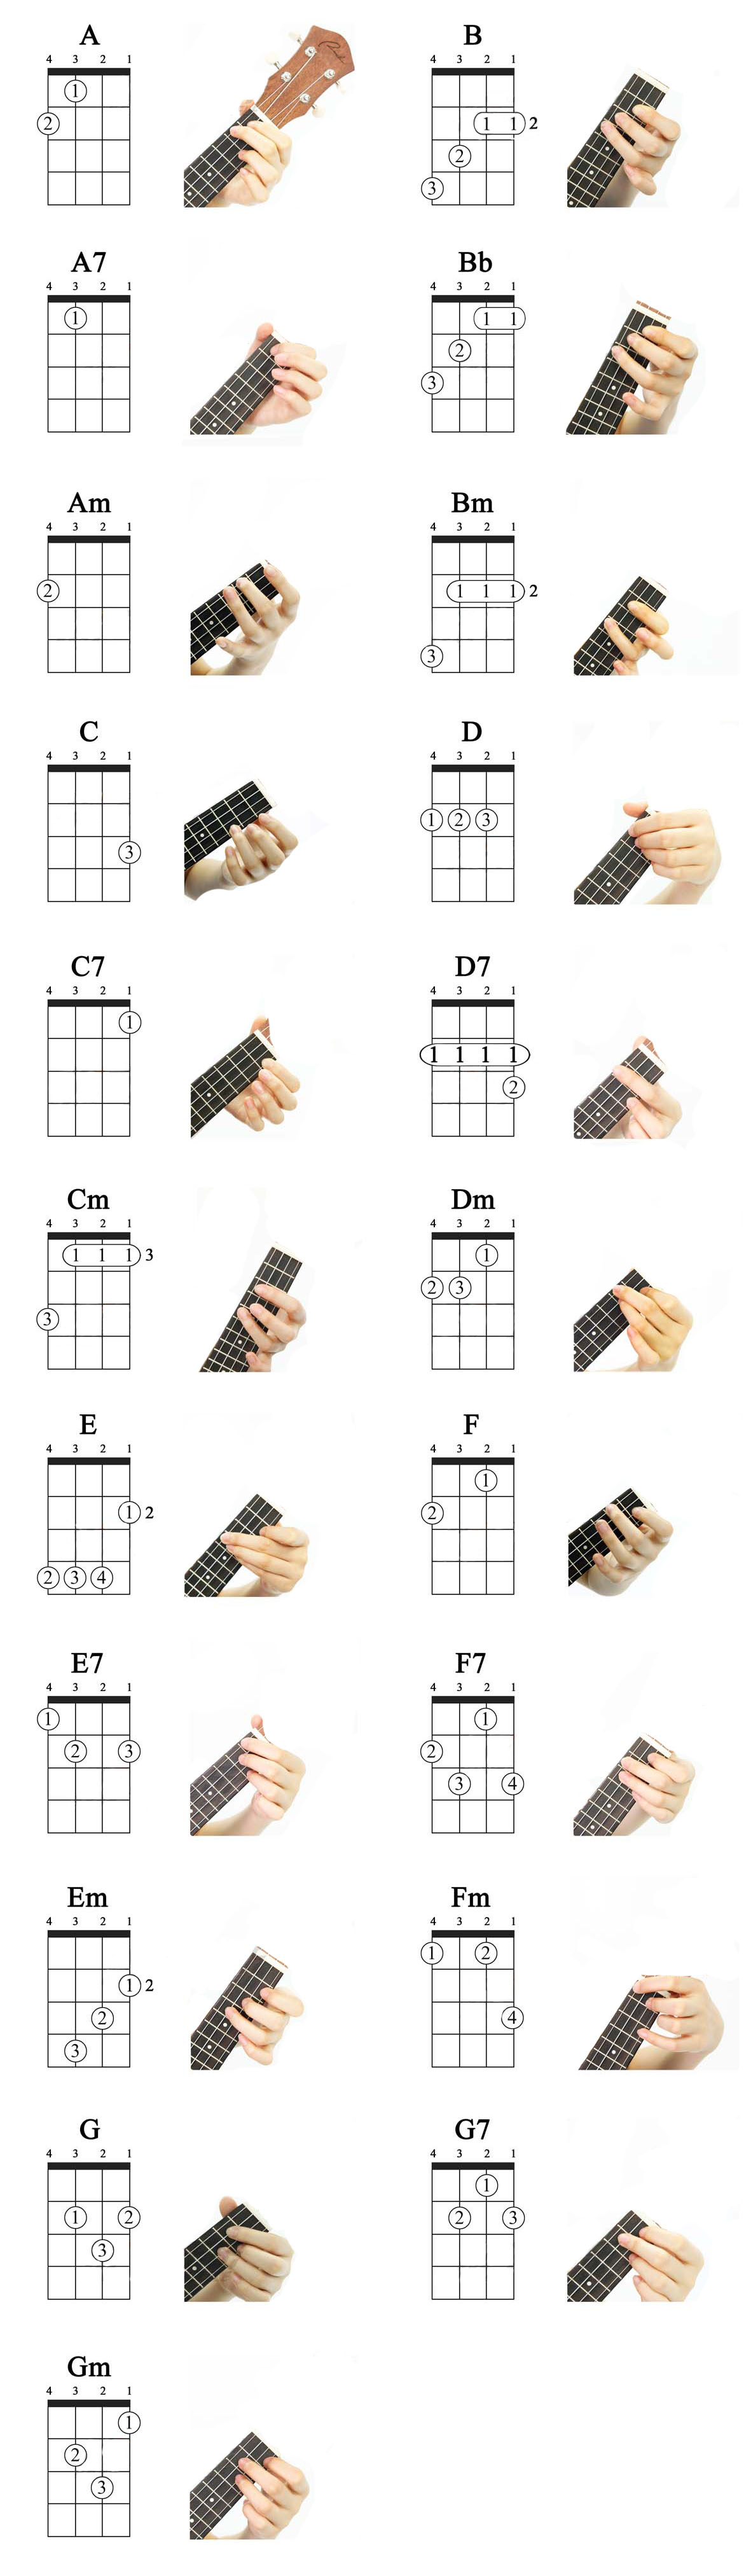 easy-ukulele-chords